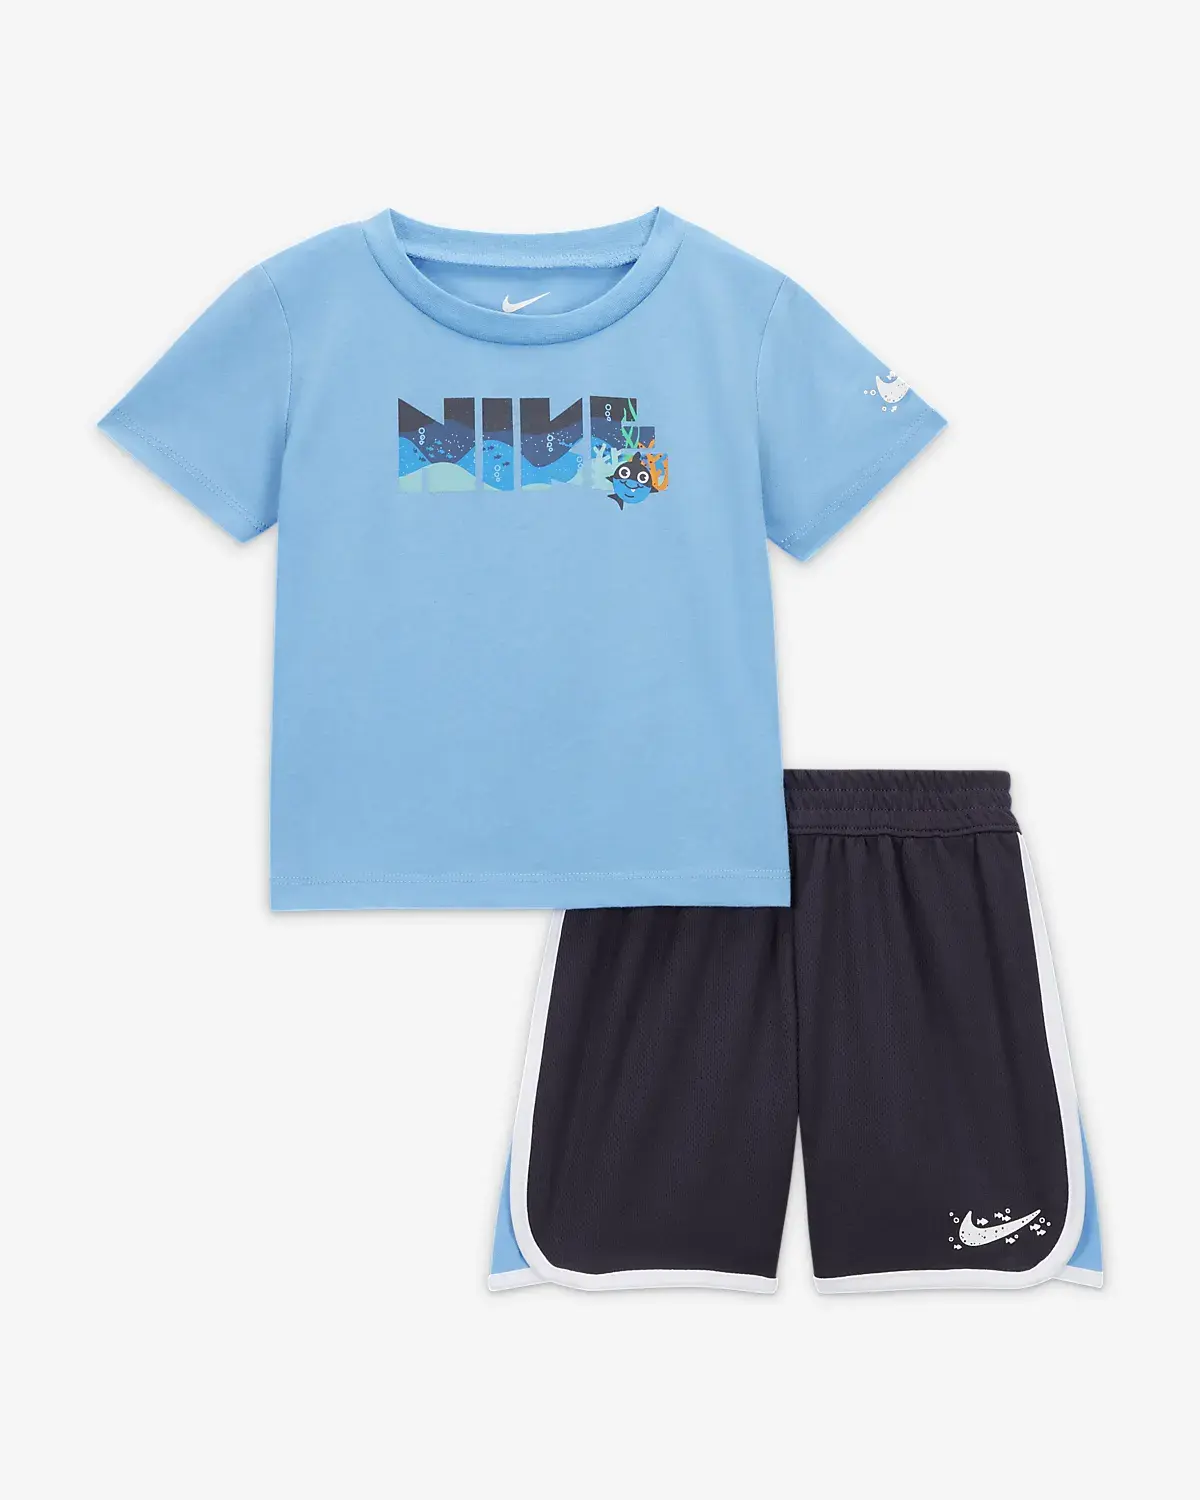 Nike Sportswear Coral Reef Mesh Shorts Set. 1